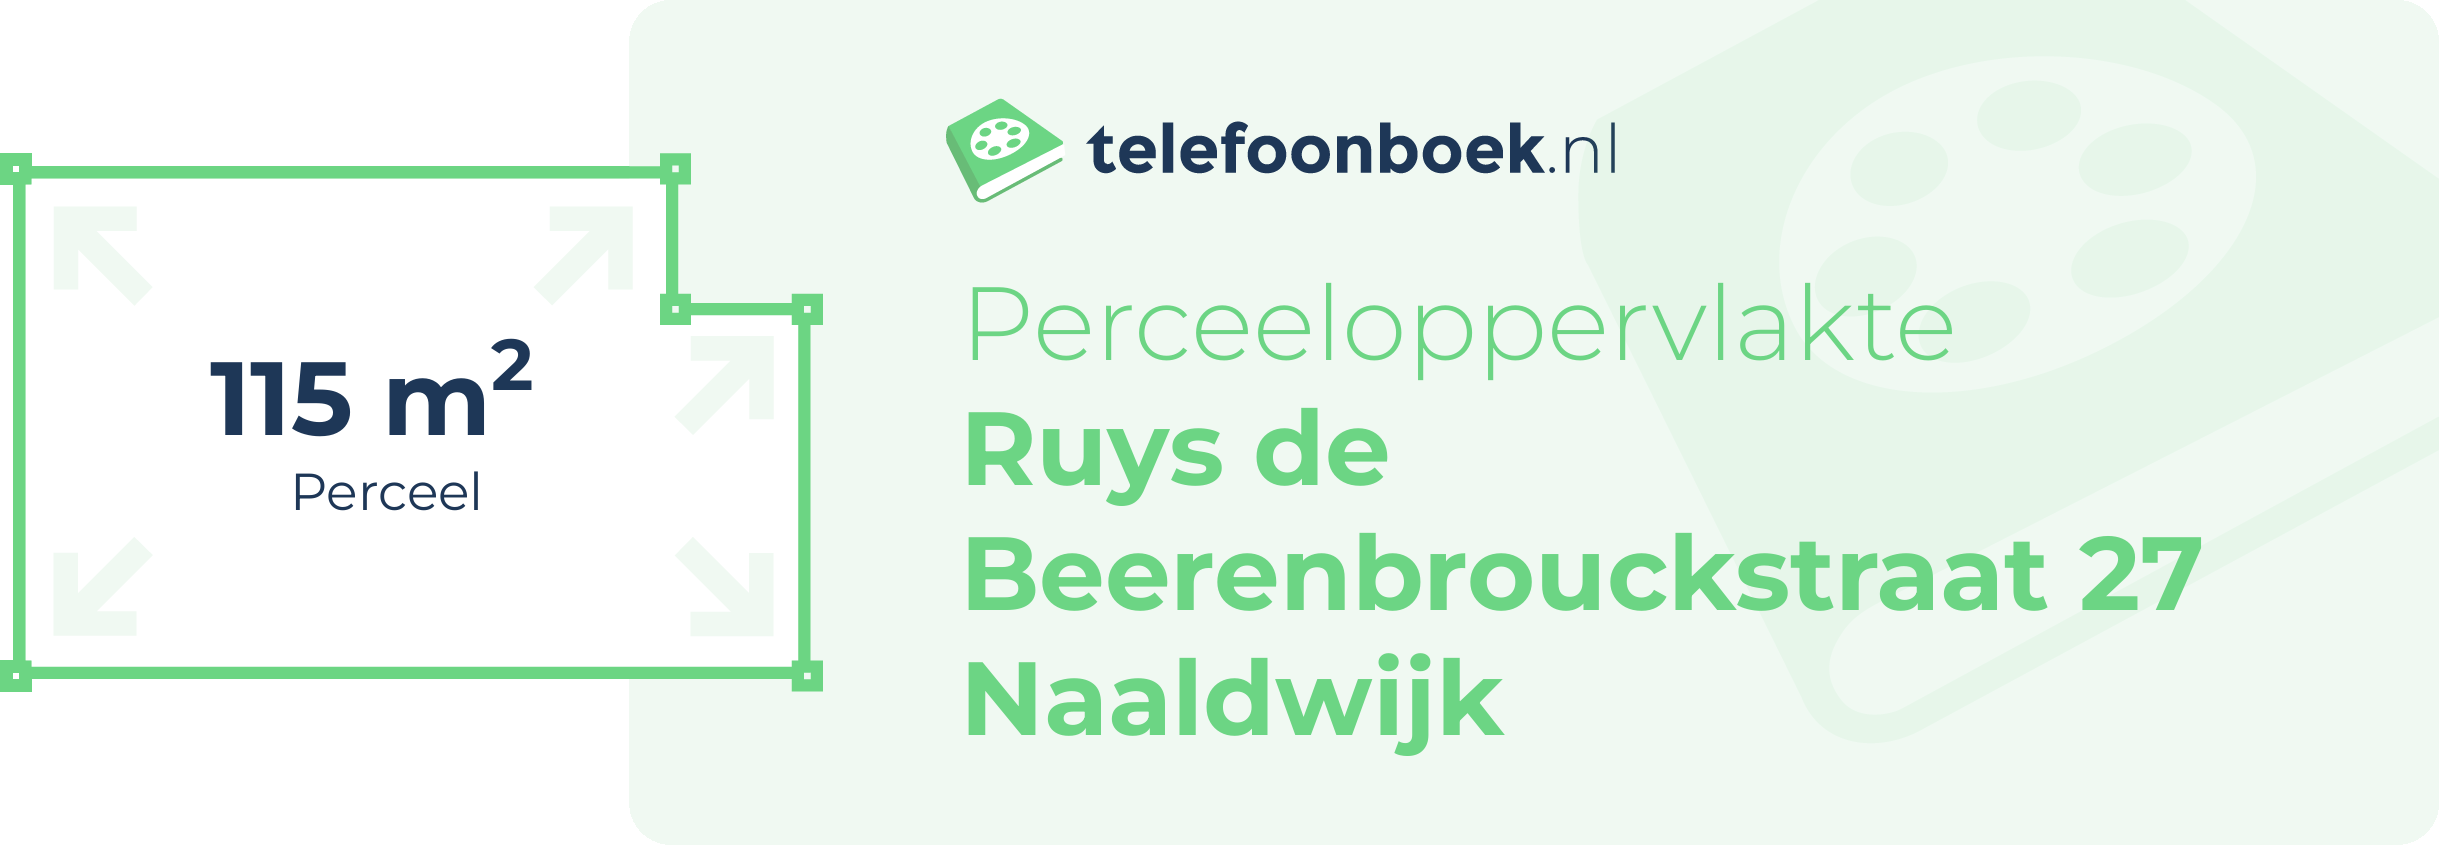 Perceeloppervlakte Ruys De Beerenbrouckstraat 27 Naaldwijk